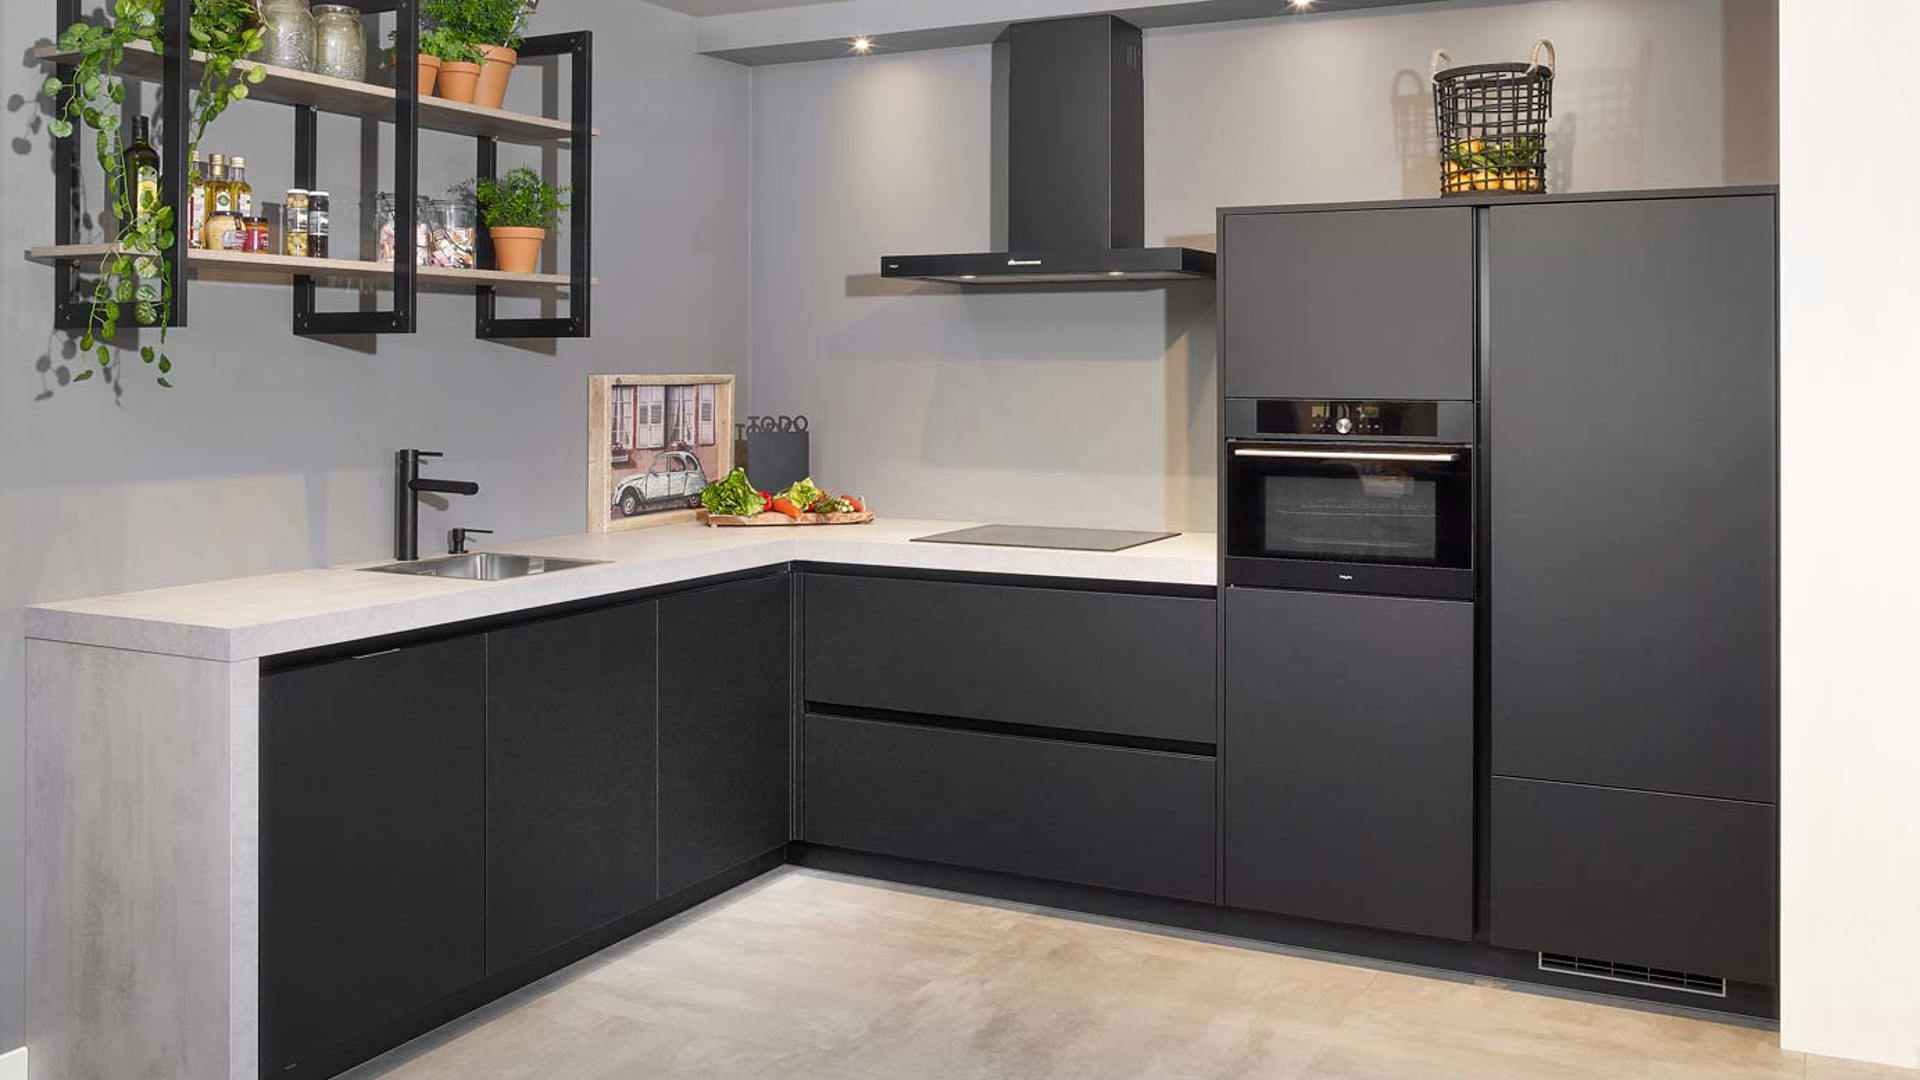 Mat zwarte keuken in moderne stijl, met betonlook aanrechtblad